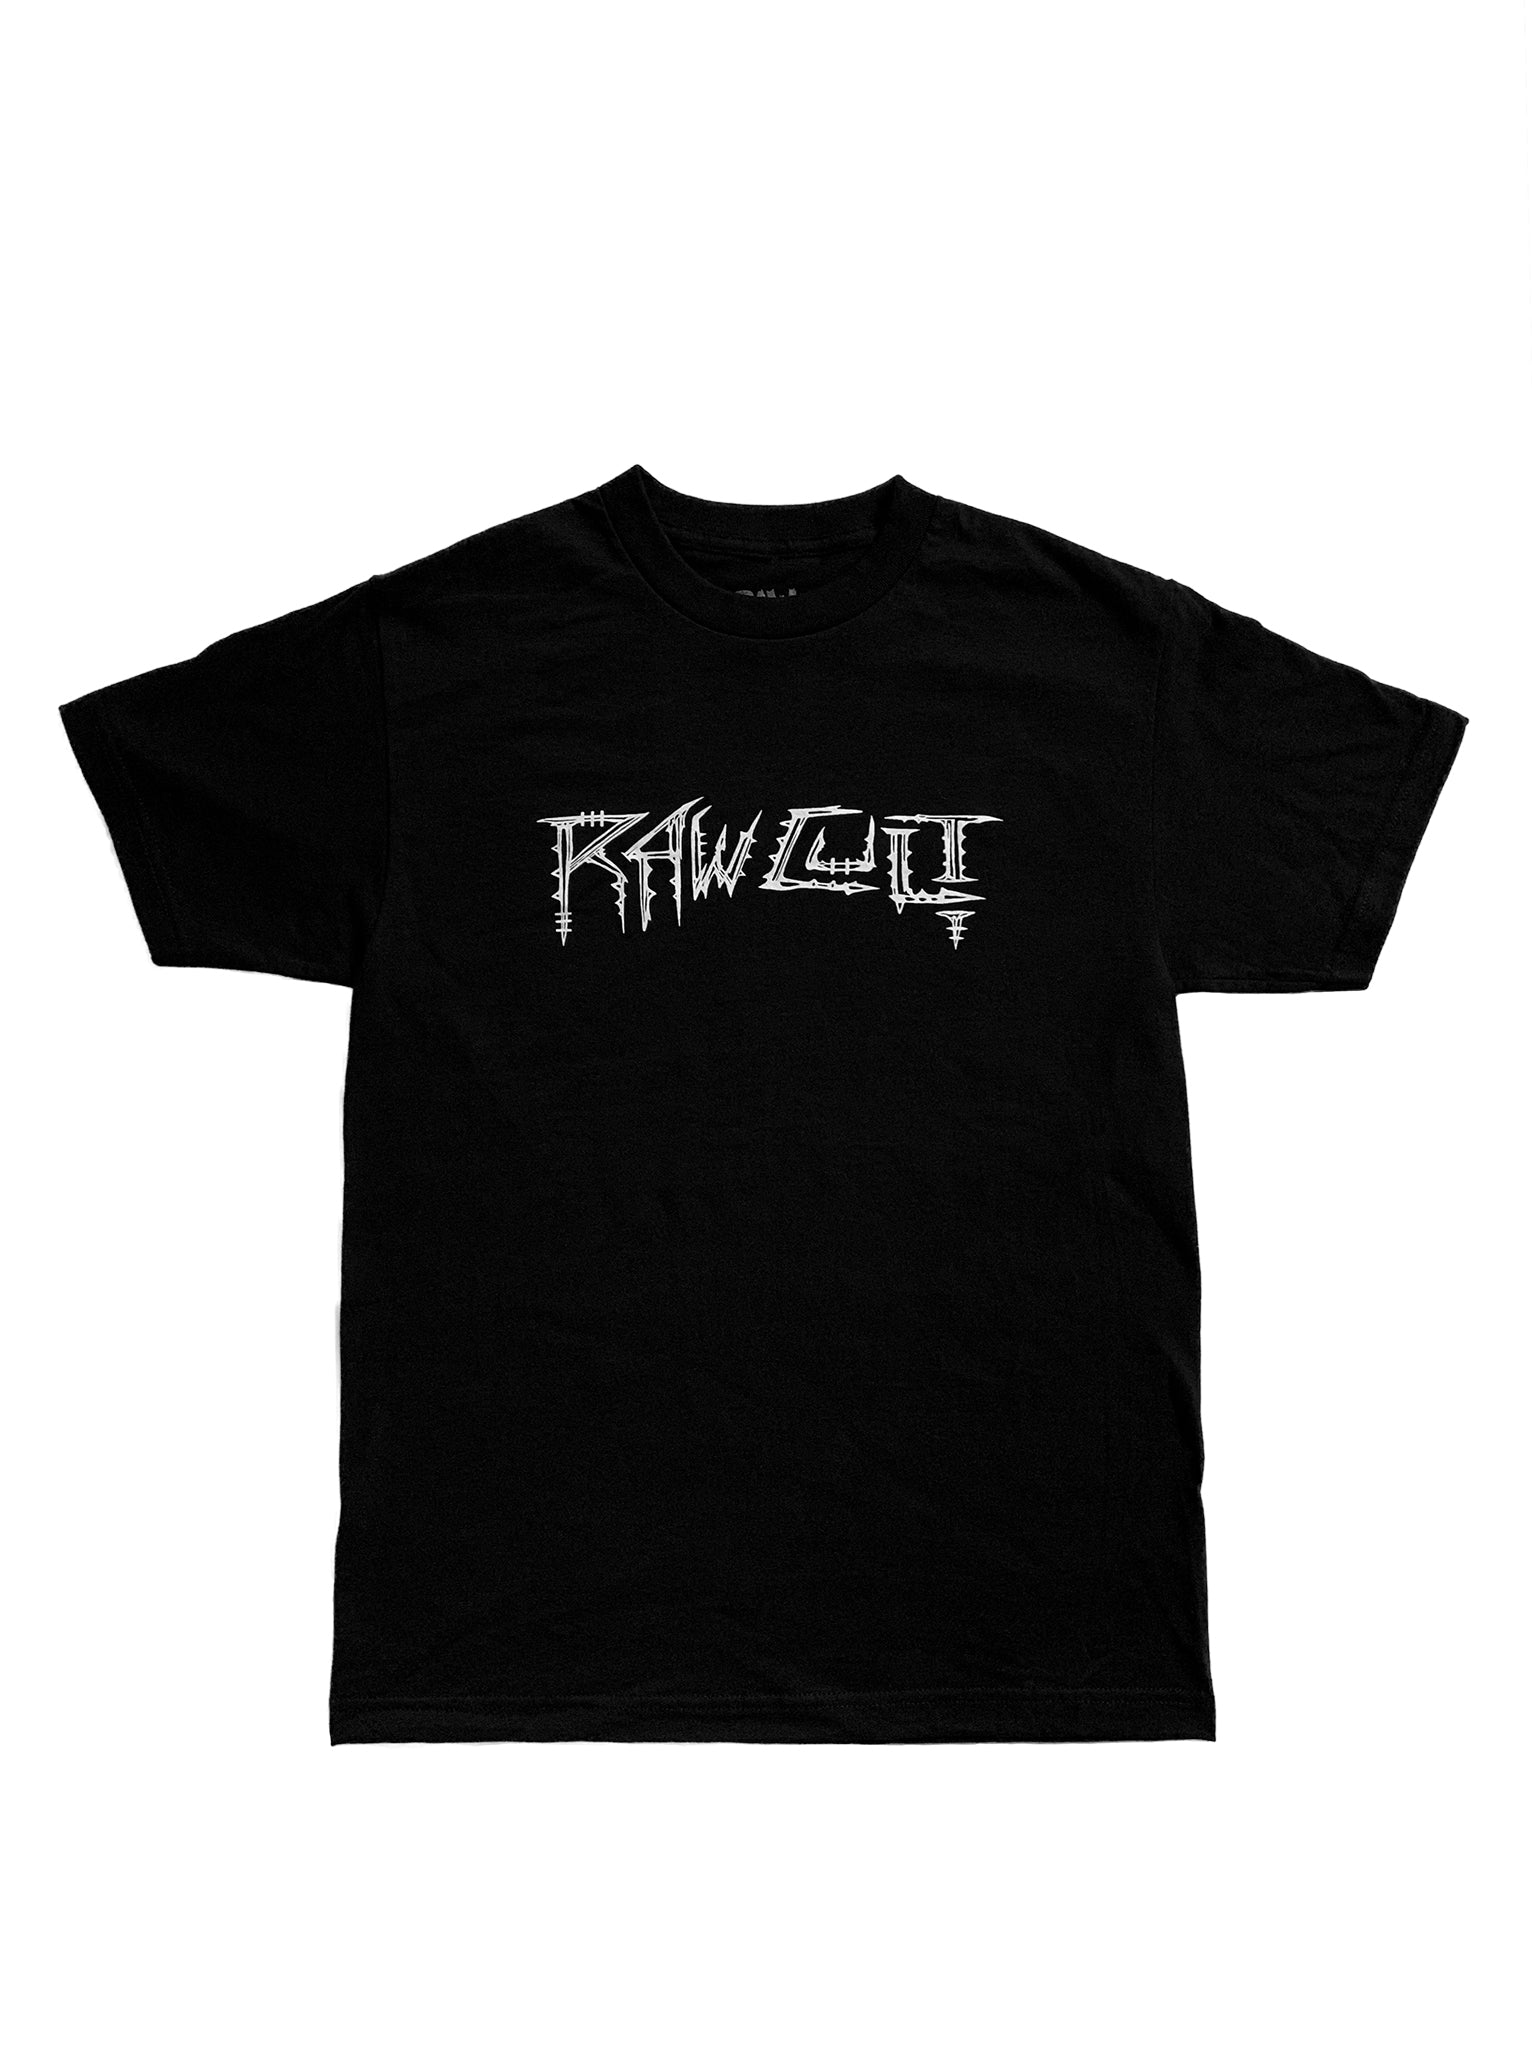 RAW CULT | RAW CULTerrestrial Logo T-Shirt (Black) | Artwork by Away